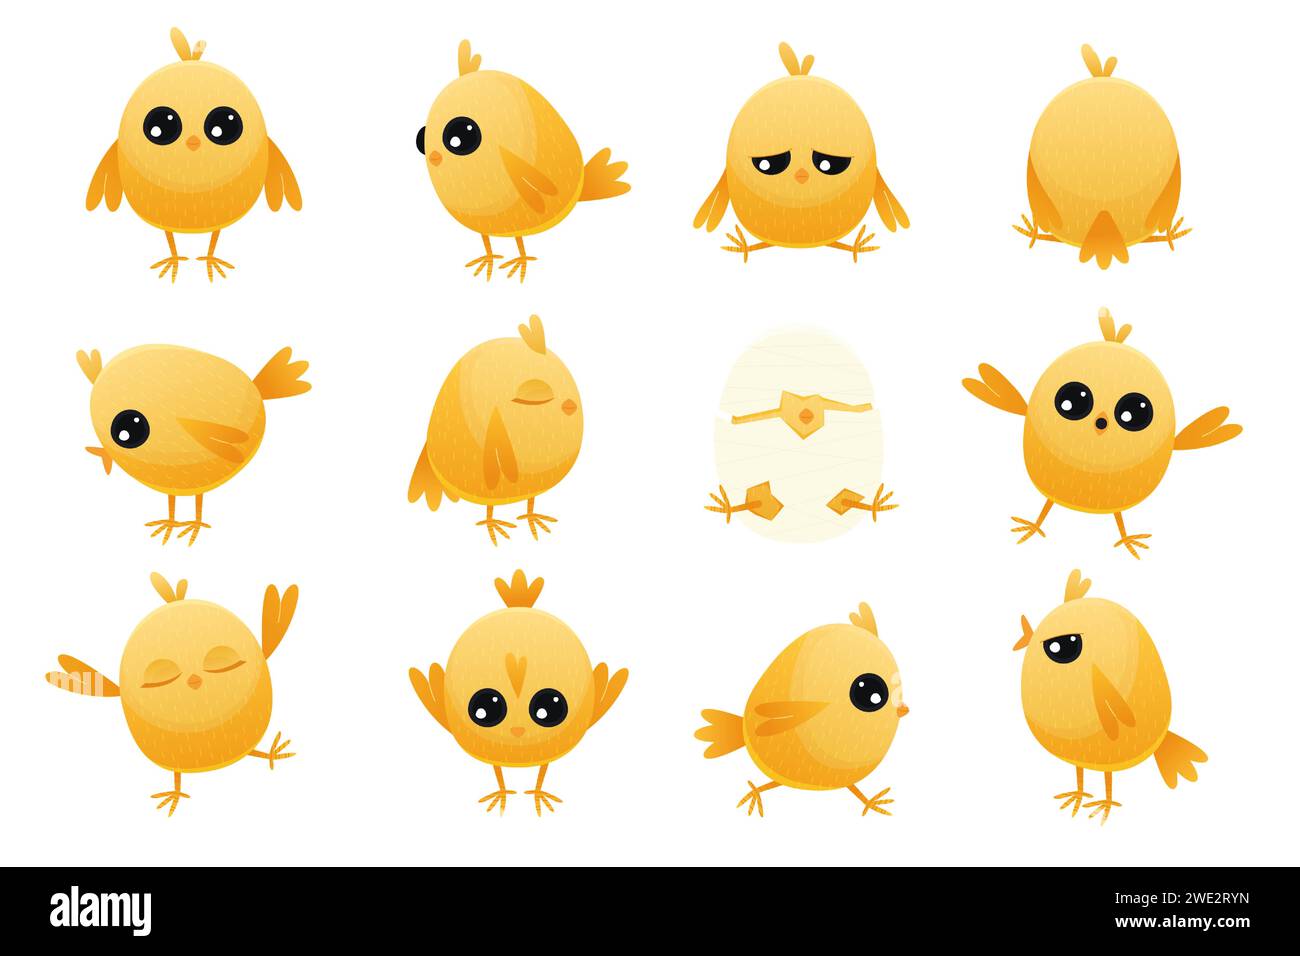 Niedliches Cartoon-Huhn-Baby. Gelbes Bauerngeflügel mit Schnabel und Flügeln, einfache glückliche Tierfiguren mit verschiedenen Emotionen. Vektor-isolierter Satz Stock Vektor